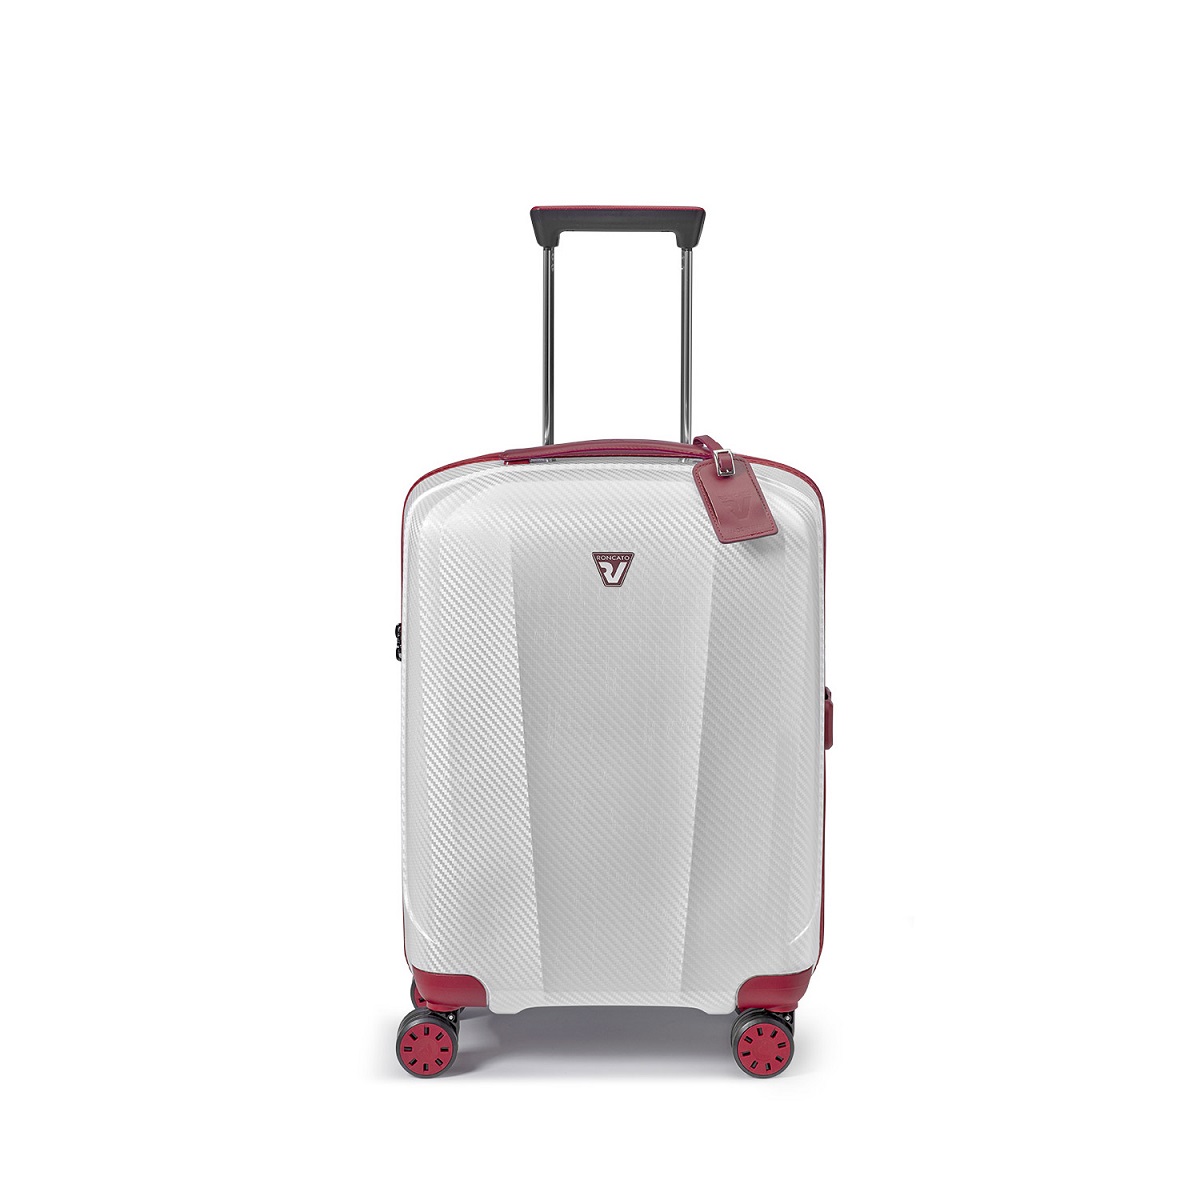 WE-GLAM Handgepäck Koffer in Weiss/Rot von Roncato